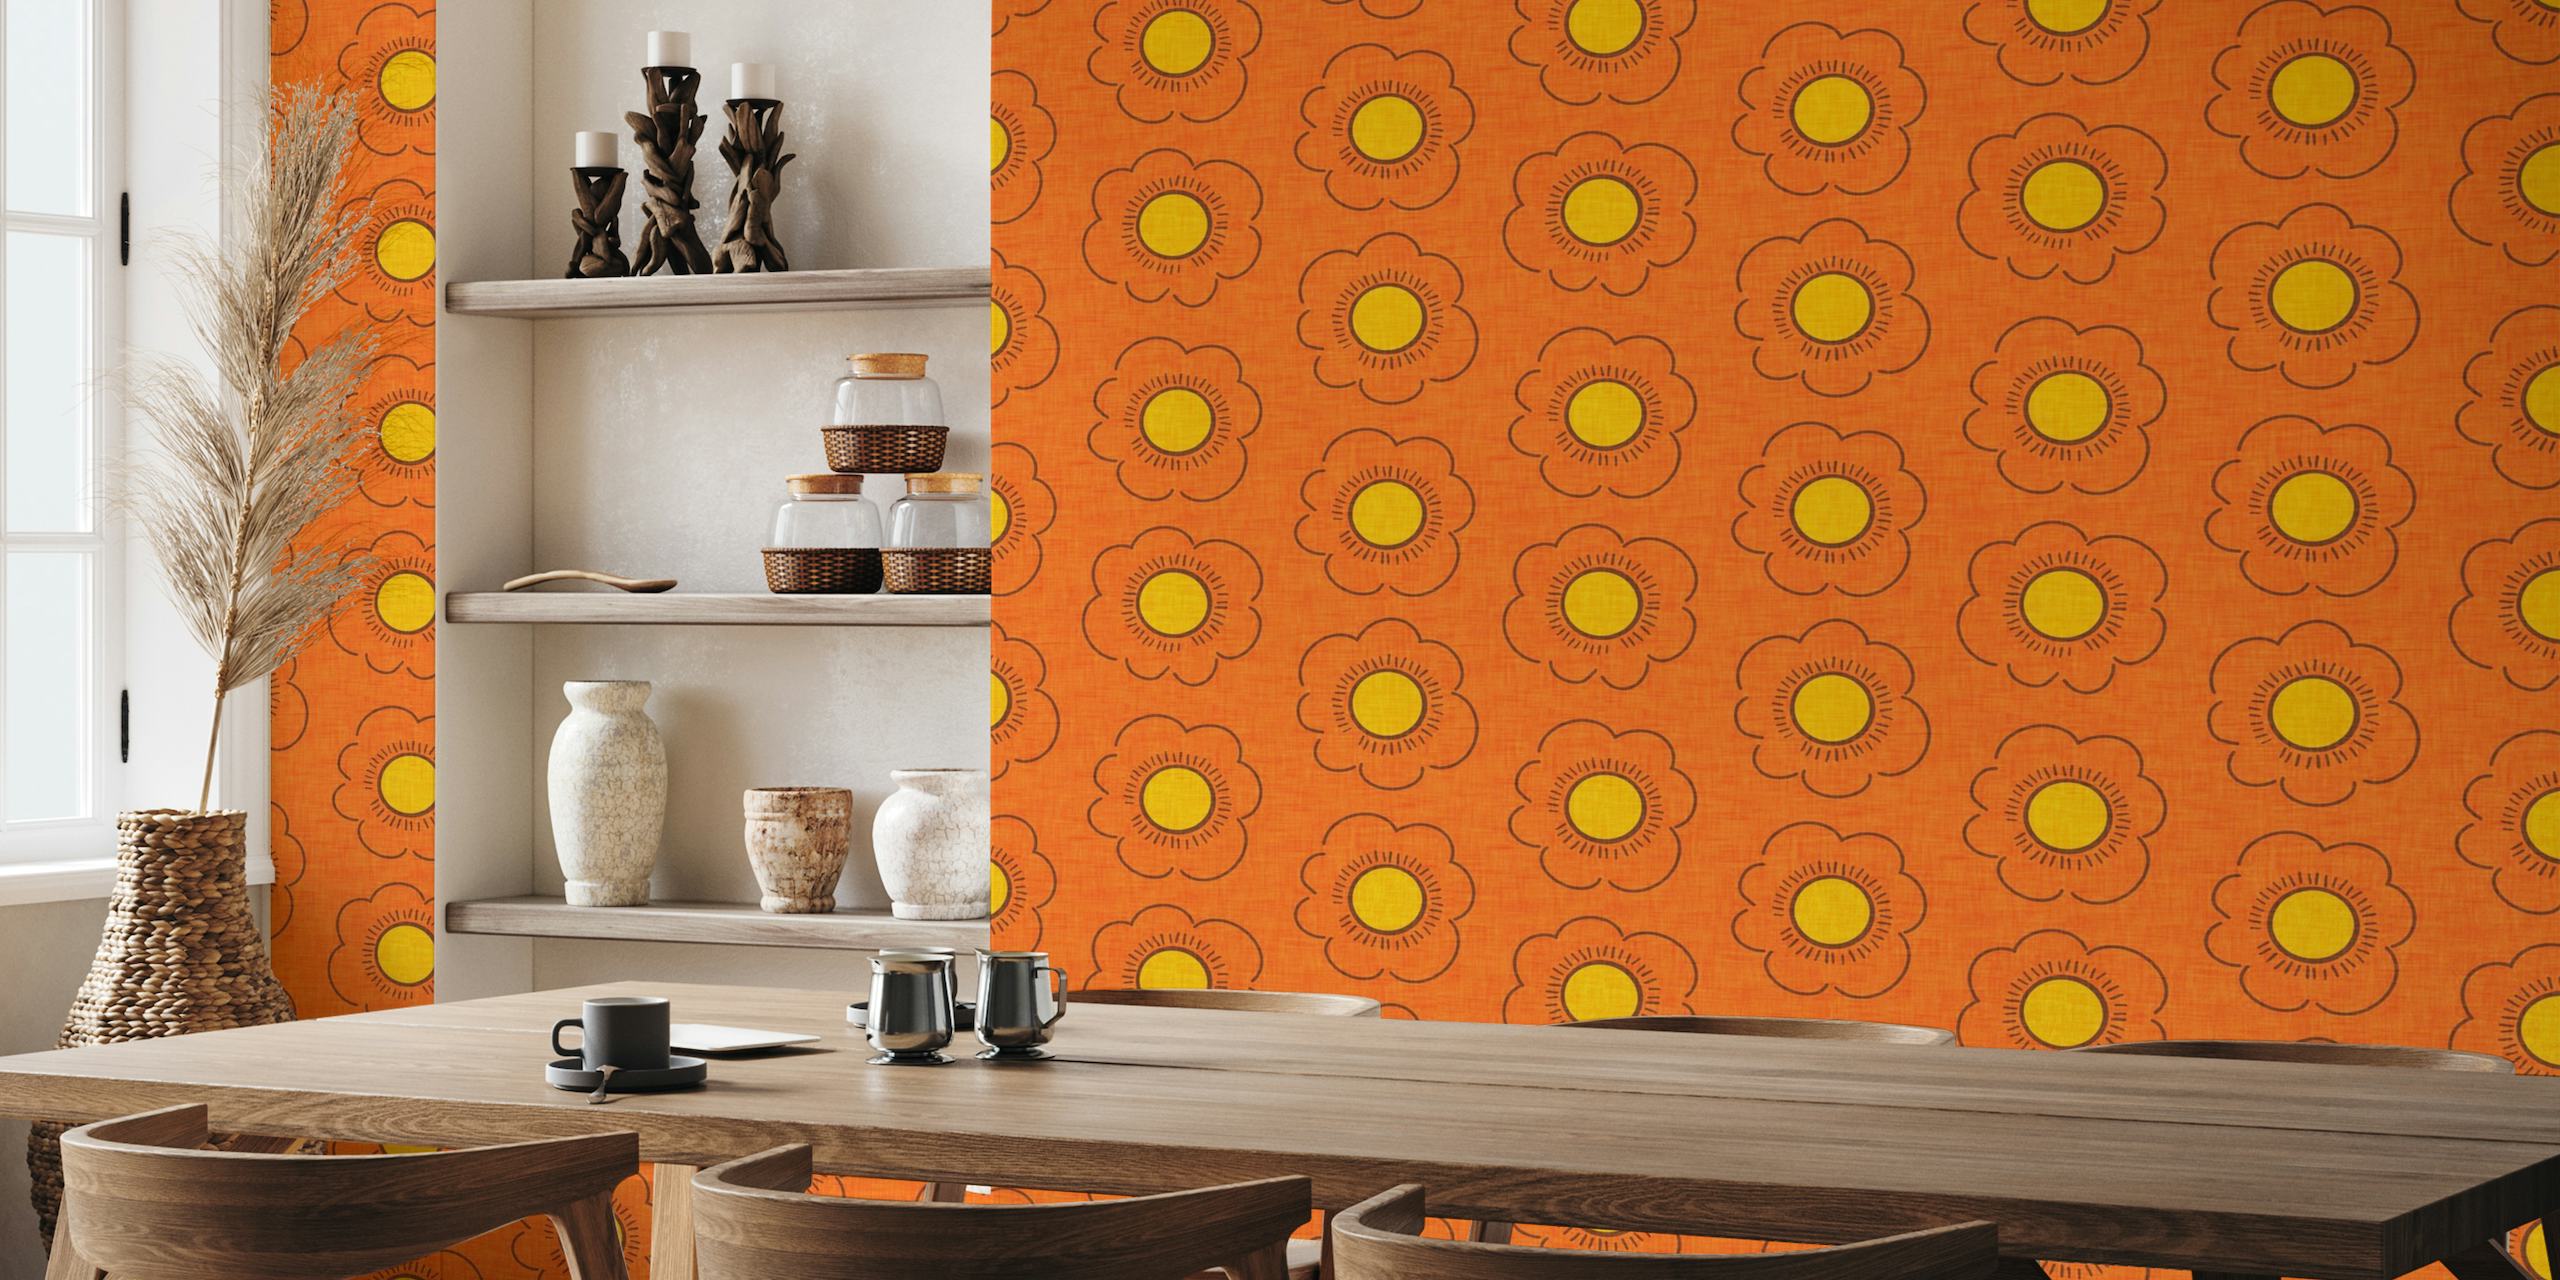 Papier peint floral orange inspiré des années 70 avec un design du milieu du siècle